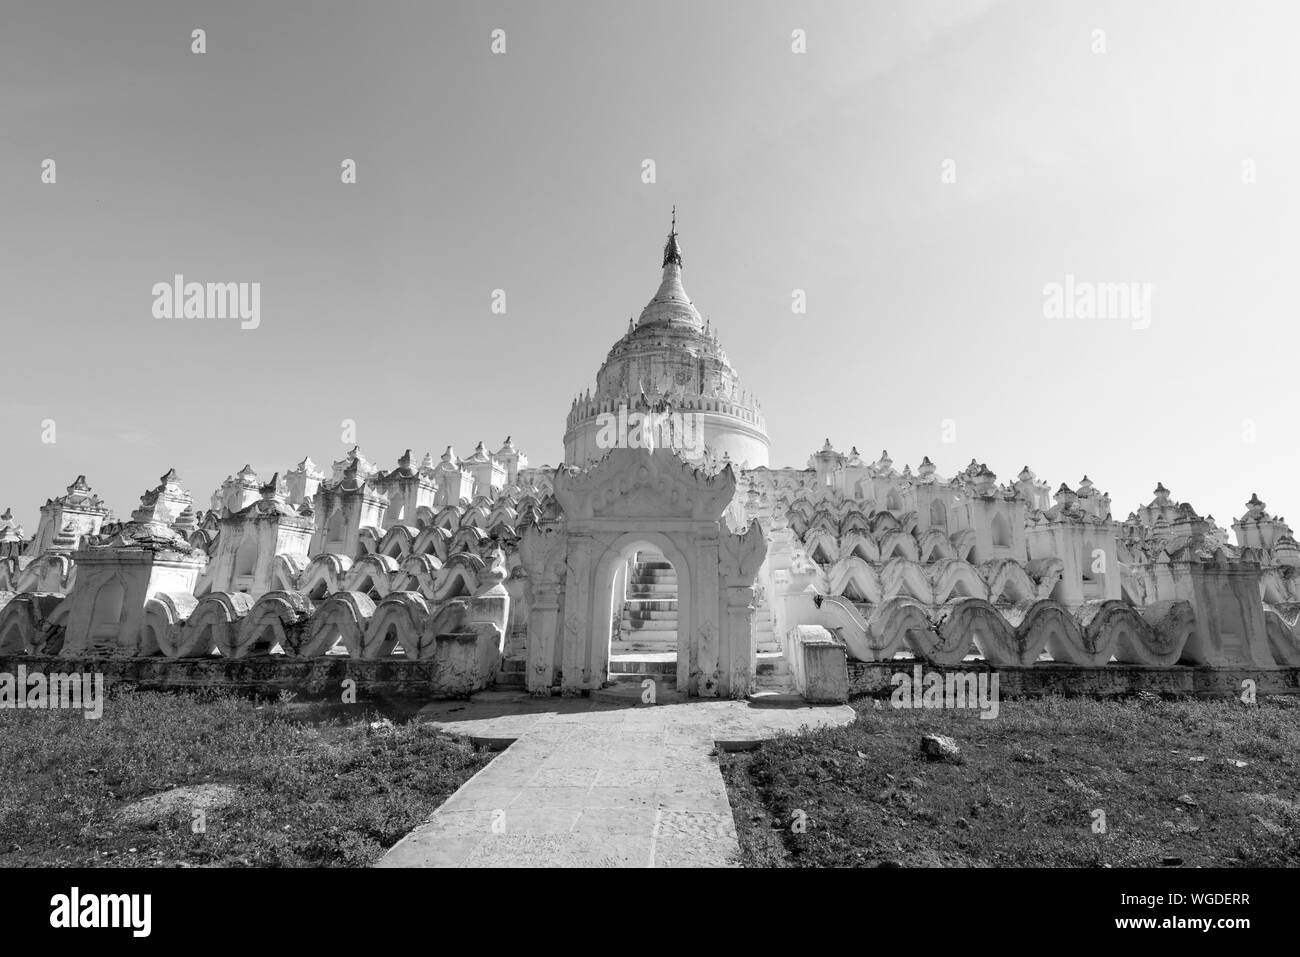 Immagine in bianco e nero di un imponente tempio buddista chiamato Pagoda Hsinbyume, situato vicino a Mandalay, Myanmar Foto Stock